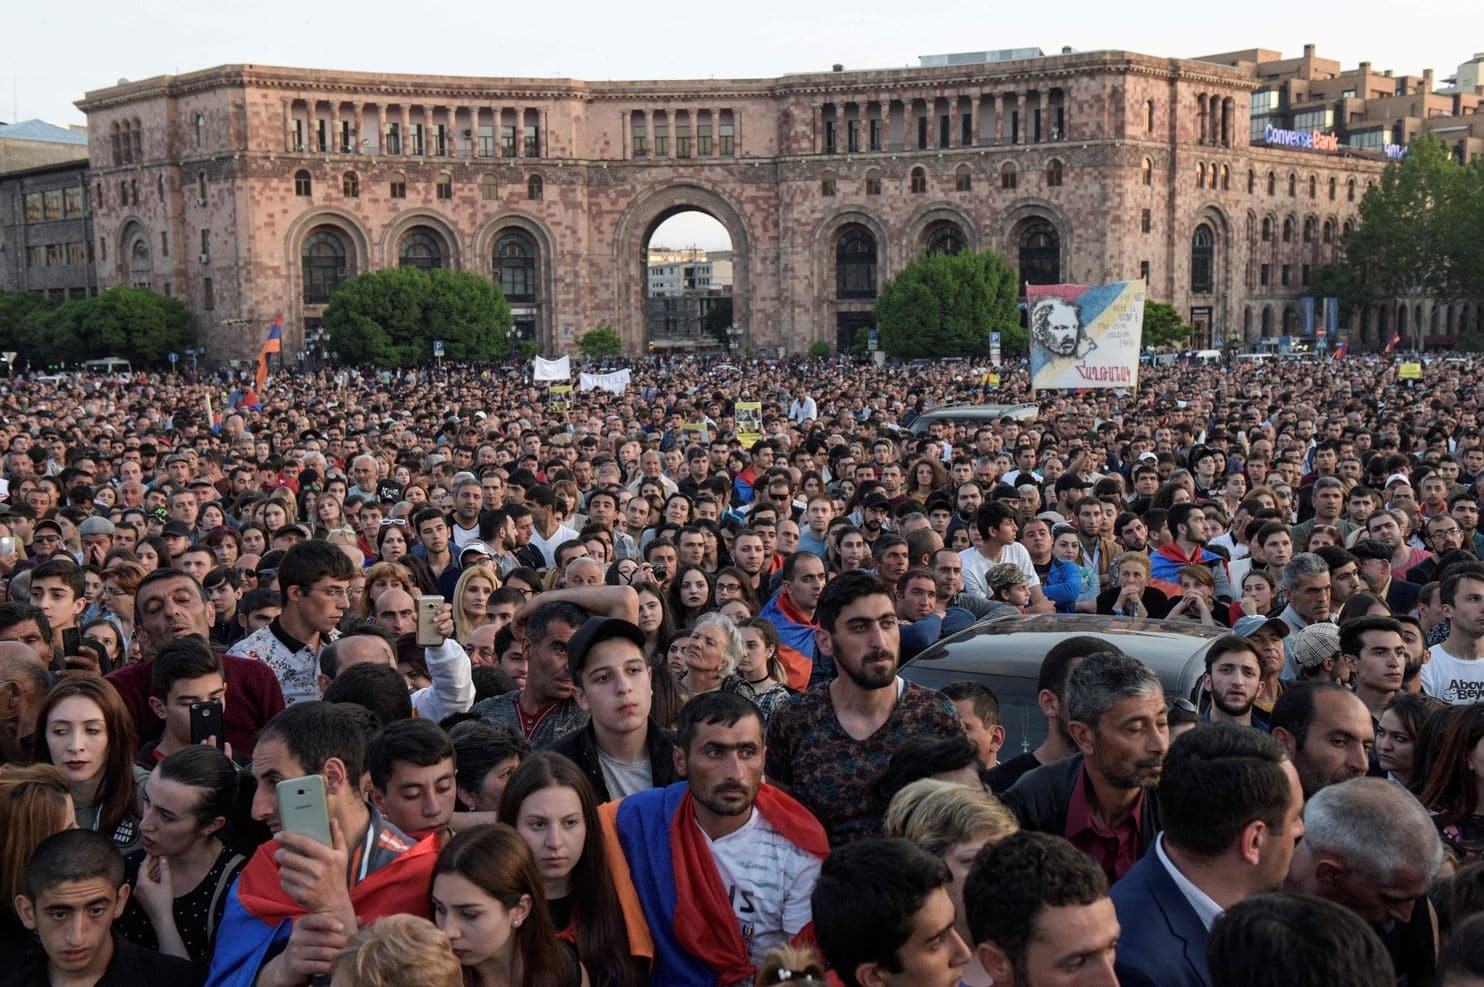 لم تعلن الاحتجاجات الأرمينية مناهضتها لروسيا ودورها في البلاد (كارين ميناسيان)